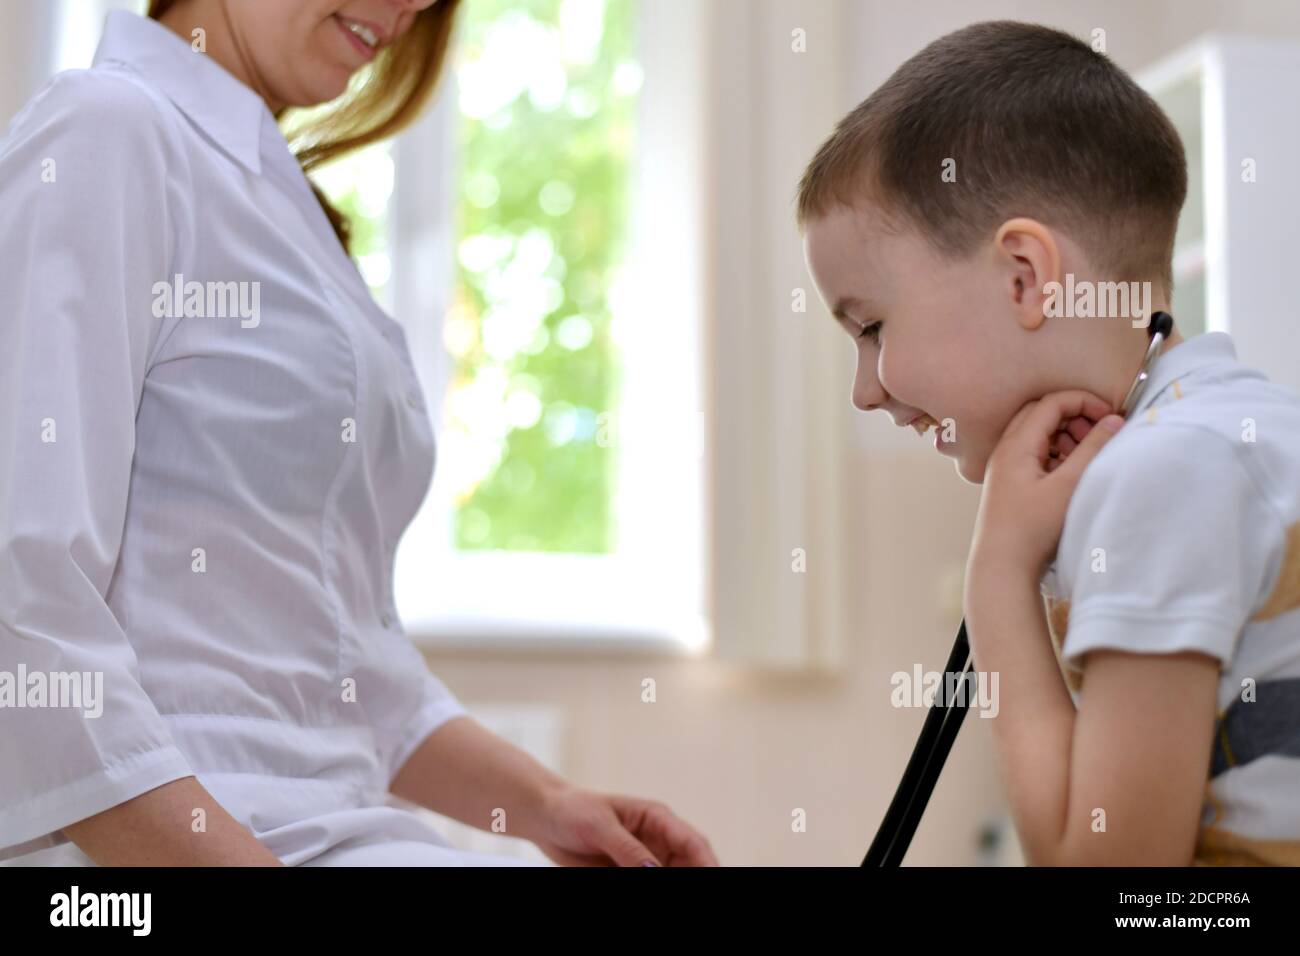 Il bambino ride con le cuffie stetoscopiche nelle orecchie, insieme al medico una ragazza in abiti bianchi. Foto Stock